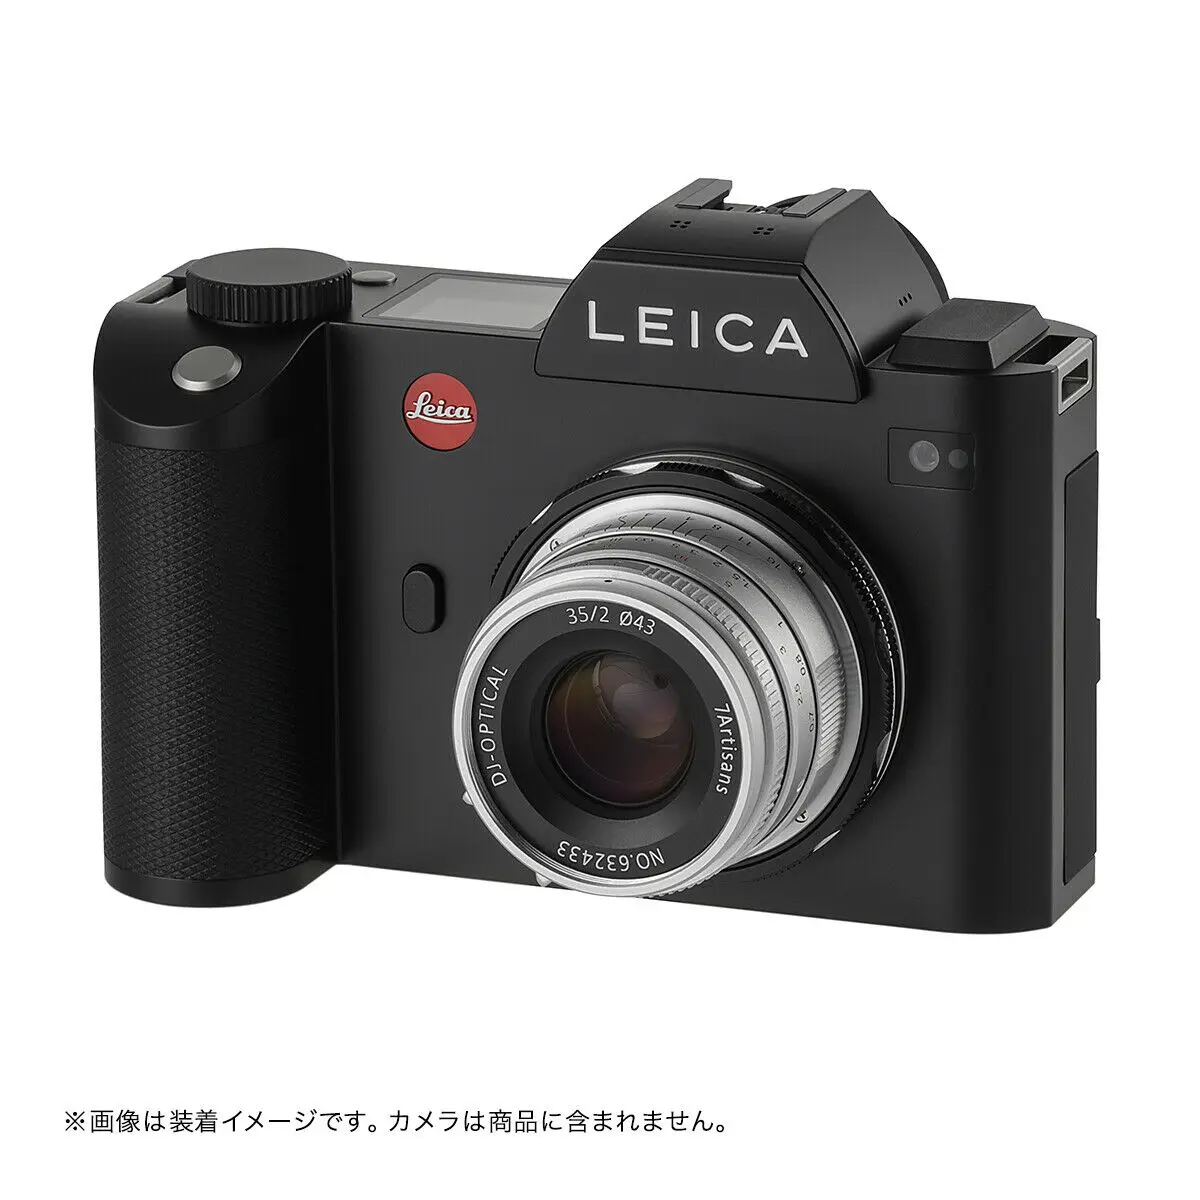 Адаптер для макросъемки адаптер с закрытым фокусом для объектива Lecia M mount для Leica T TL TL2 CL SL SL2 Panasonic S1 S1R S1H Sigma fp L